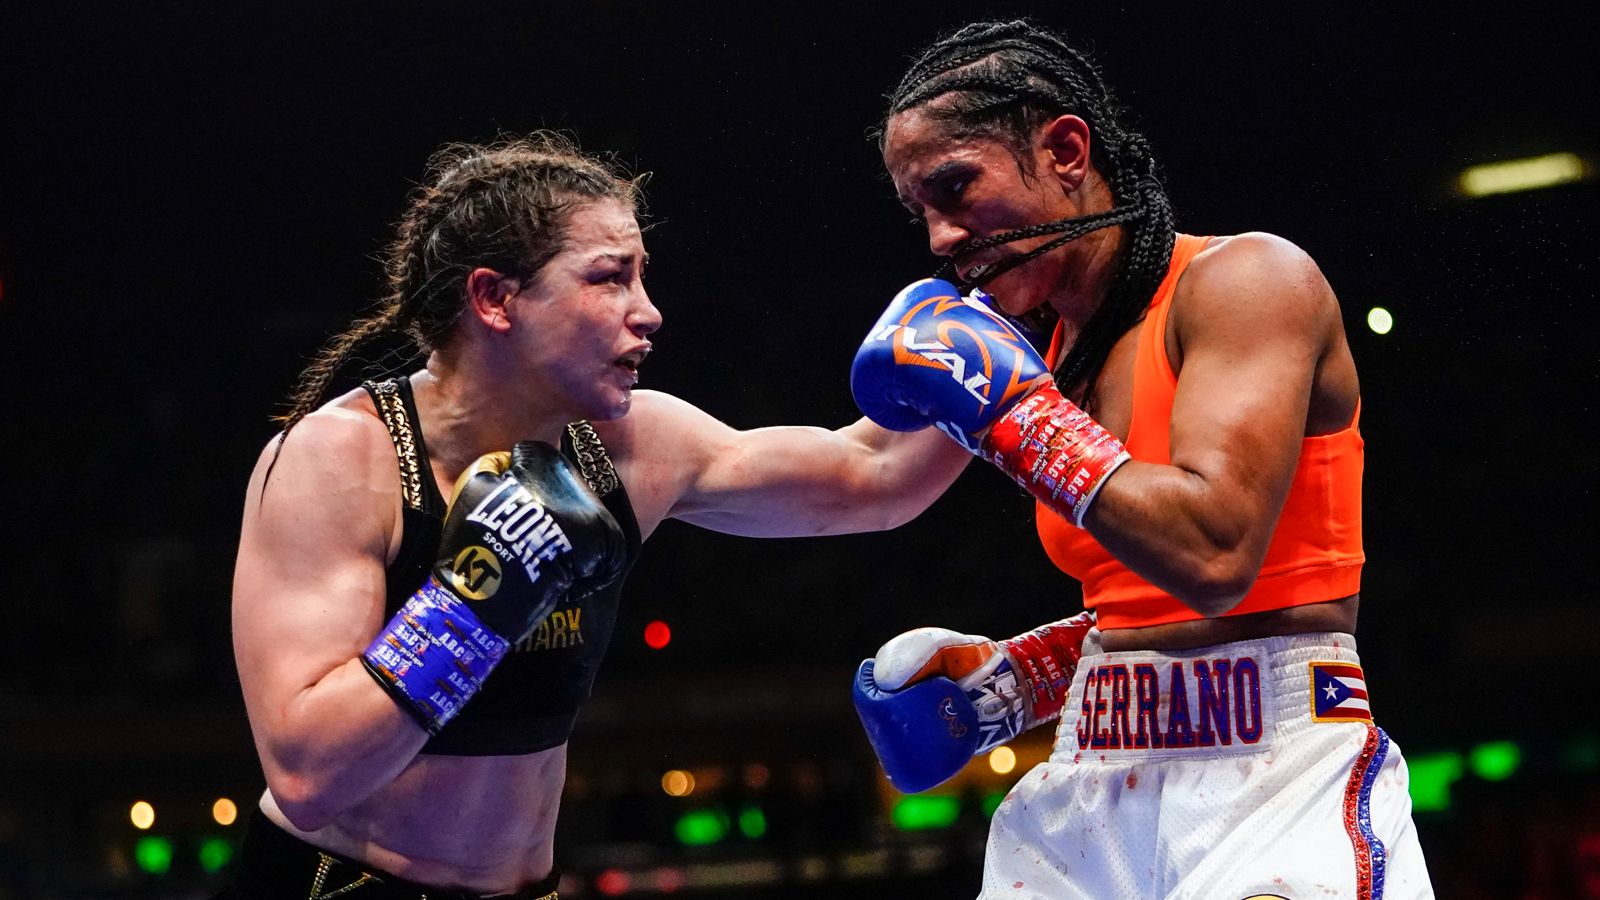 كاتي تايلور تهزم أماندا سيرانو في أكبر معركة في تاريخ الملاكمة النسائية |  اخبار العالم